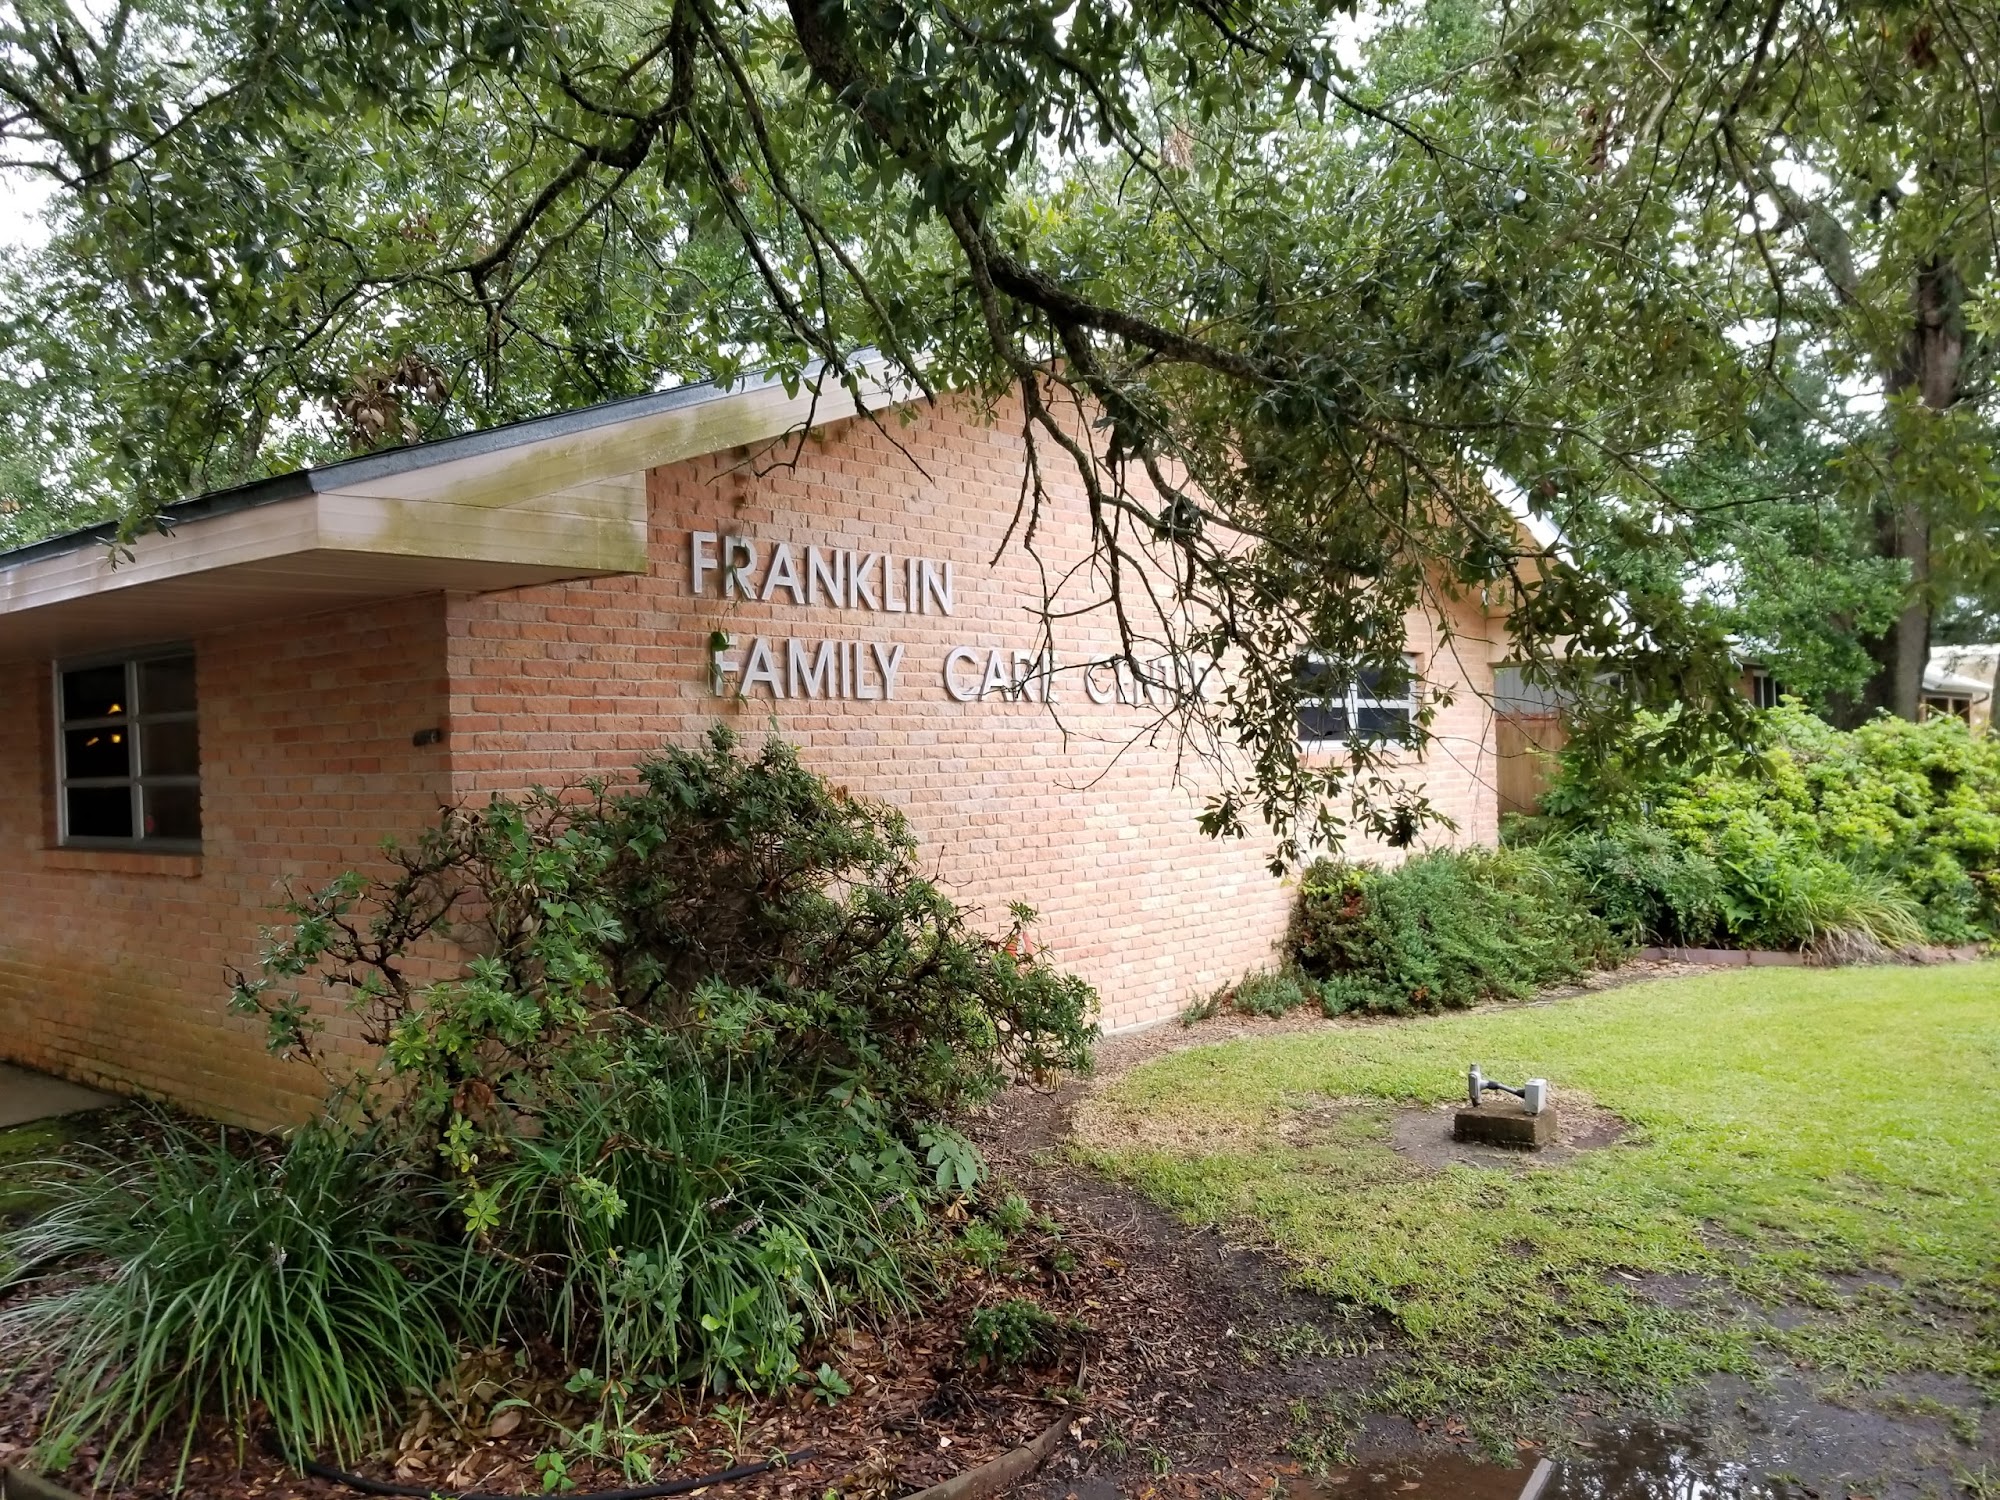 Franklin Family Care Center 606 Haifleigh St, Franklin Louisiana 70538